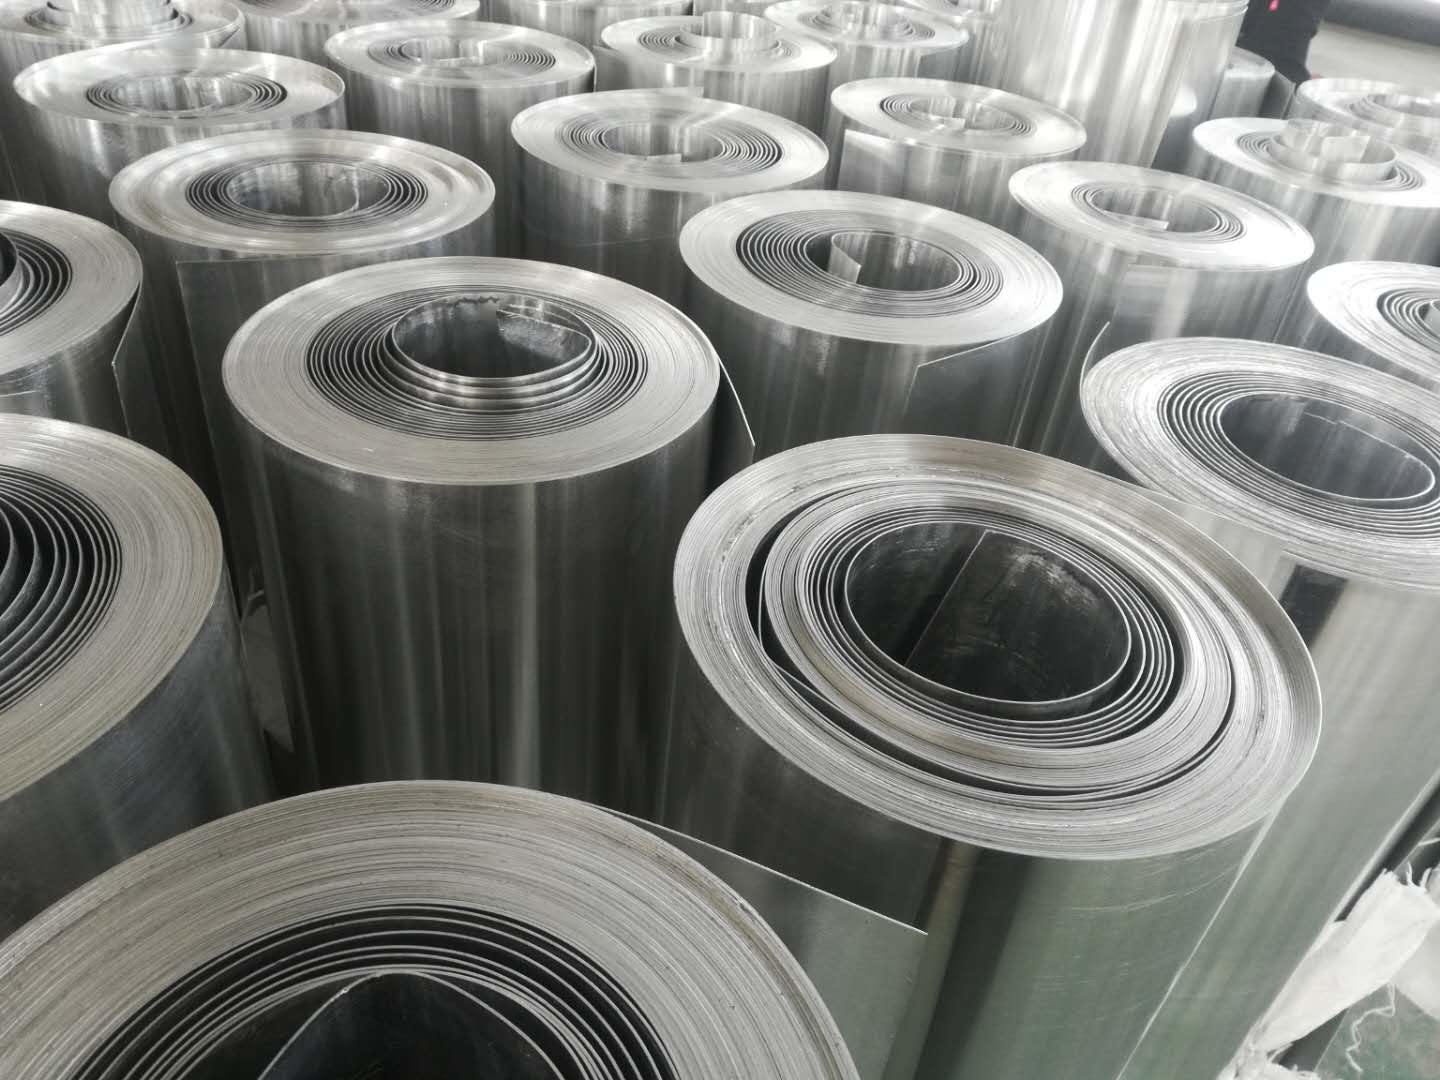 El material metálico utilizado para las lengüetas de las latas de bebidas: ¿es aleación de aluminio?